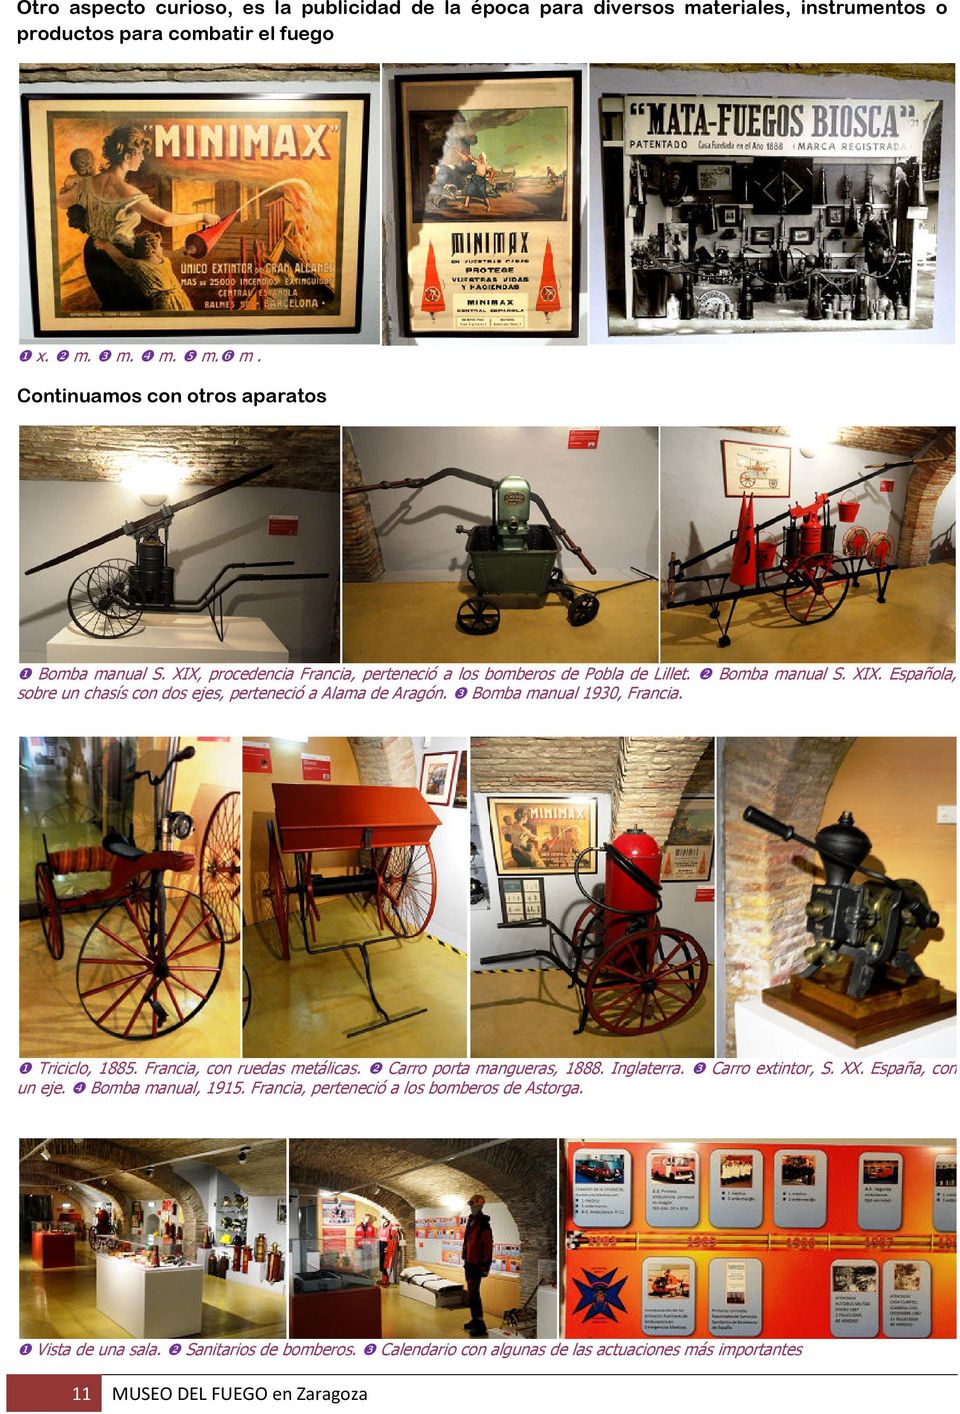 ❸ Bomba manual 1930, Francia. ❶ Triciclo, 1885. Francia, con ruedas metálicas. ❷ Carro porta mangueras, 1888. Inglaterra. ❸ Carro extintor, S. XX. España, con un eje.